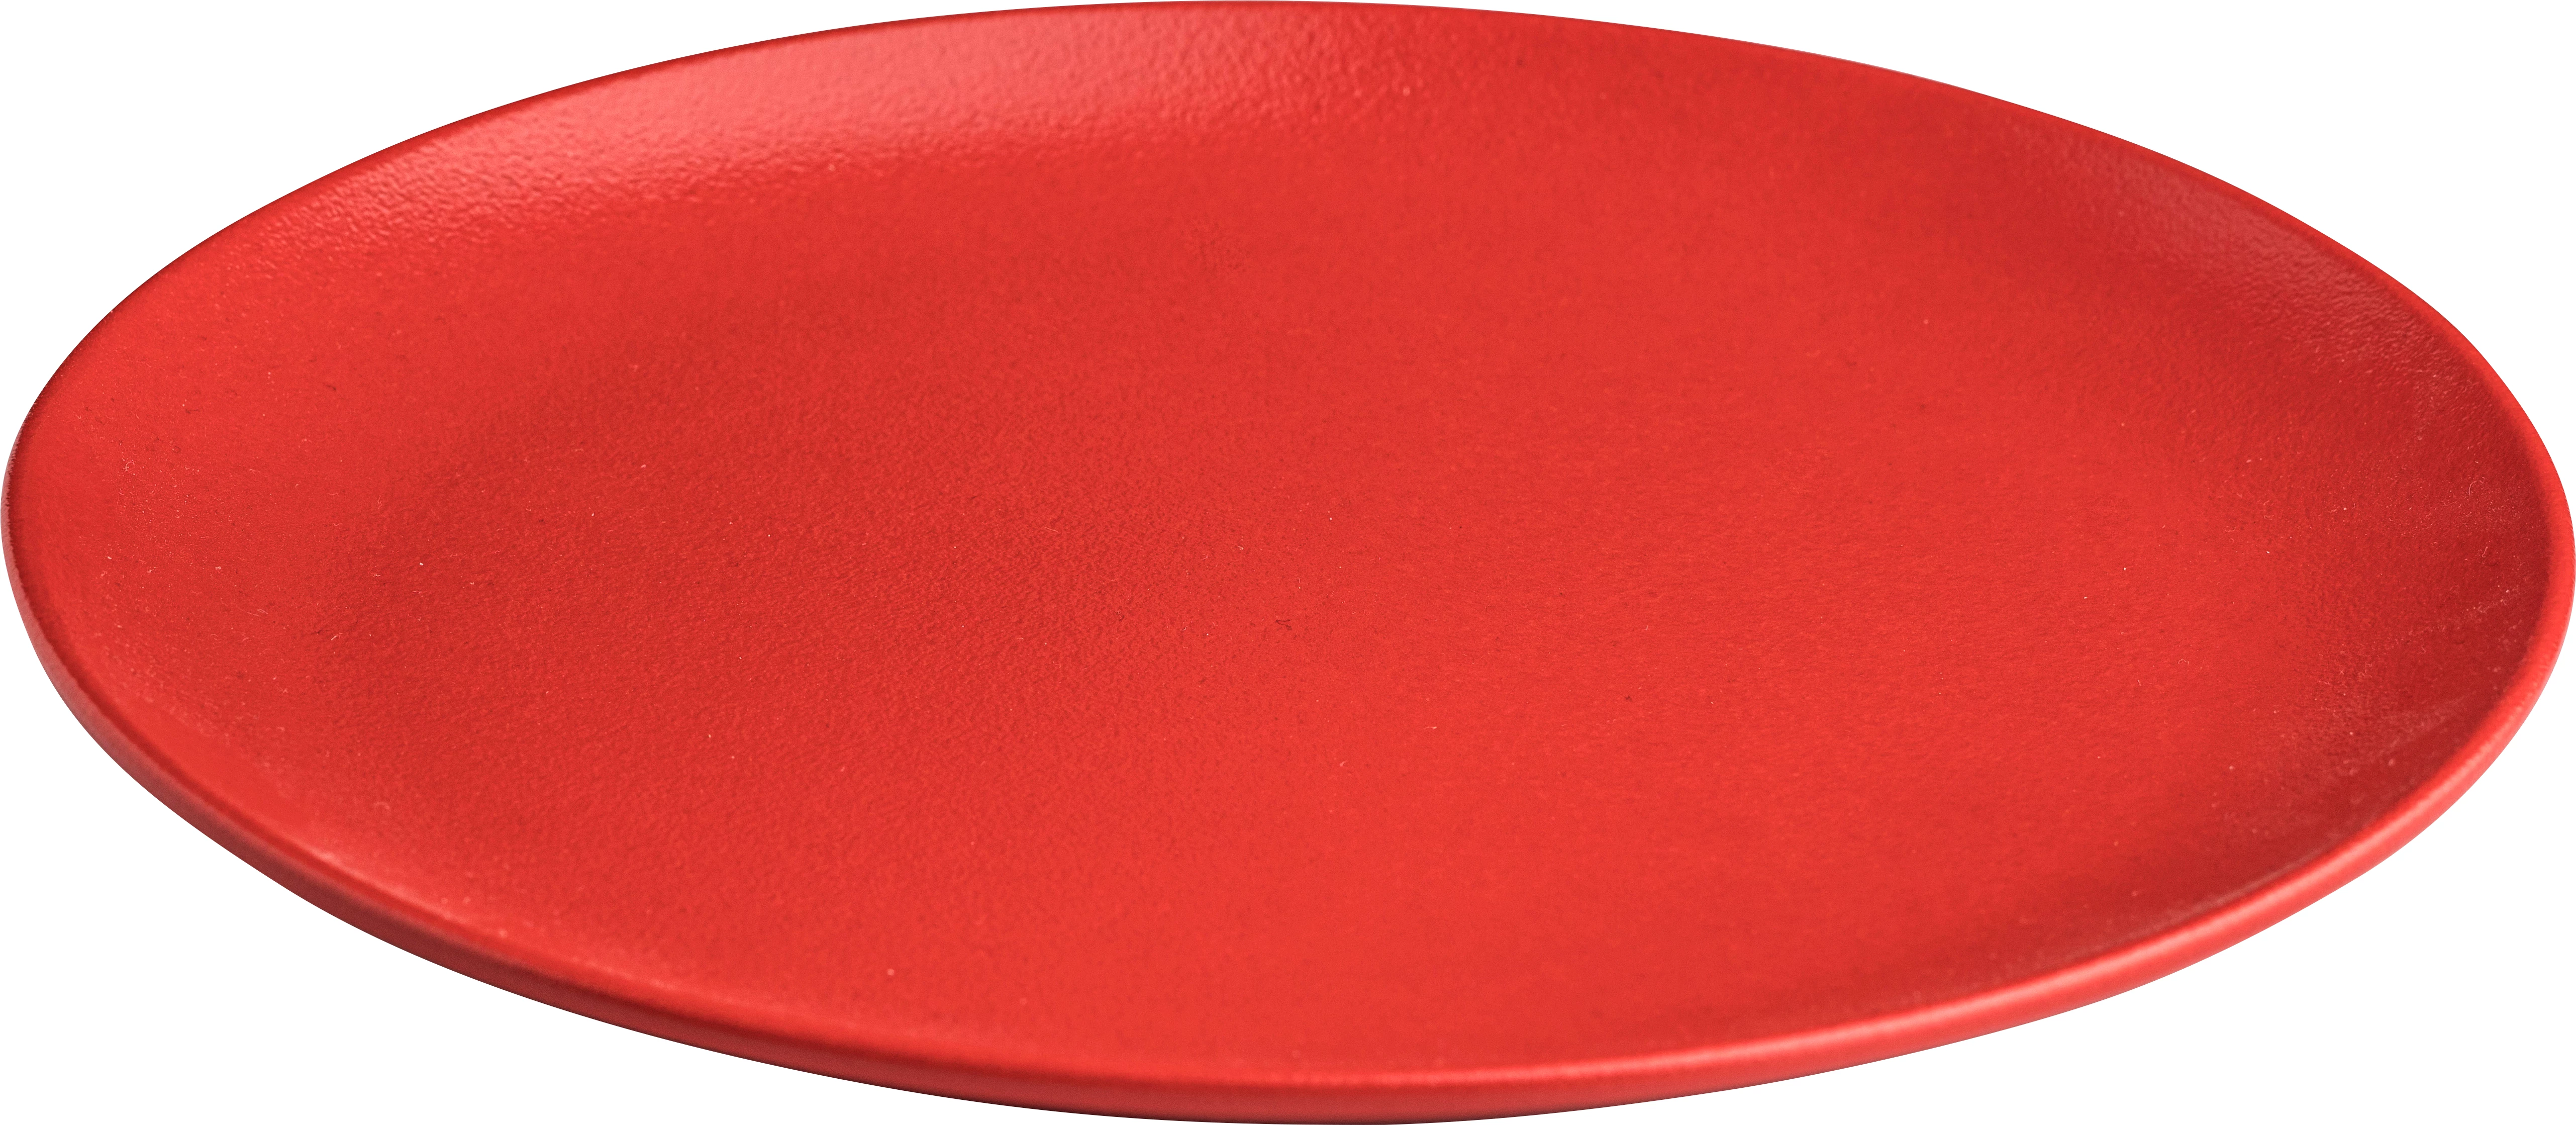 RAK Neofusion flad tallerken uden fane, rød, ø27 cm